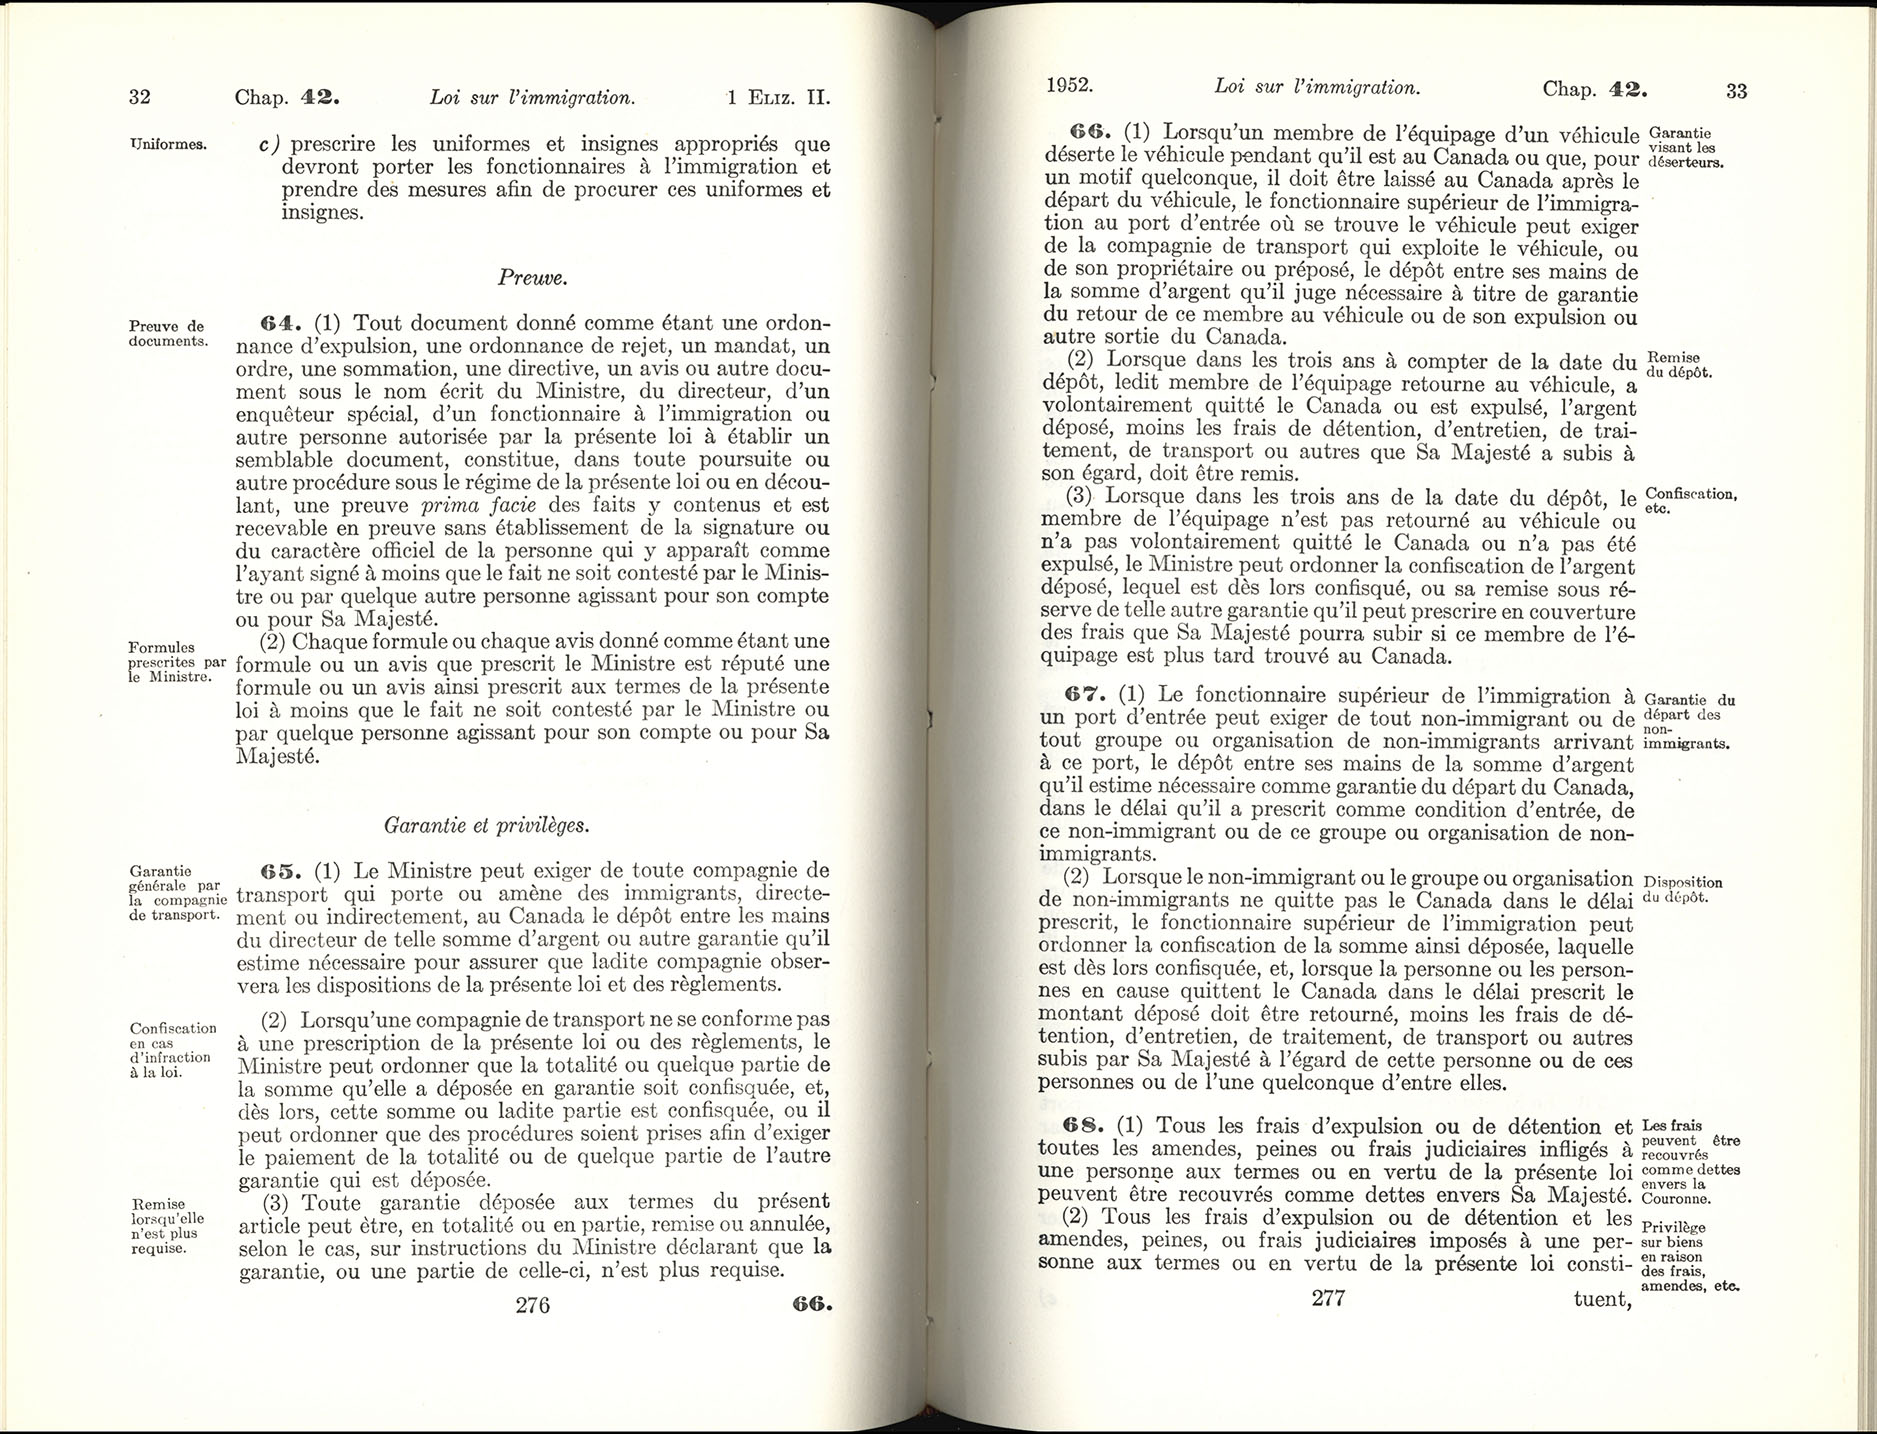 Chap 42 Page 276, 277 Loi sur l’immigration, 1952